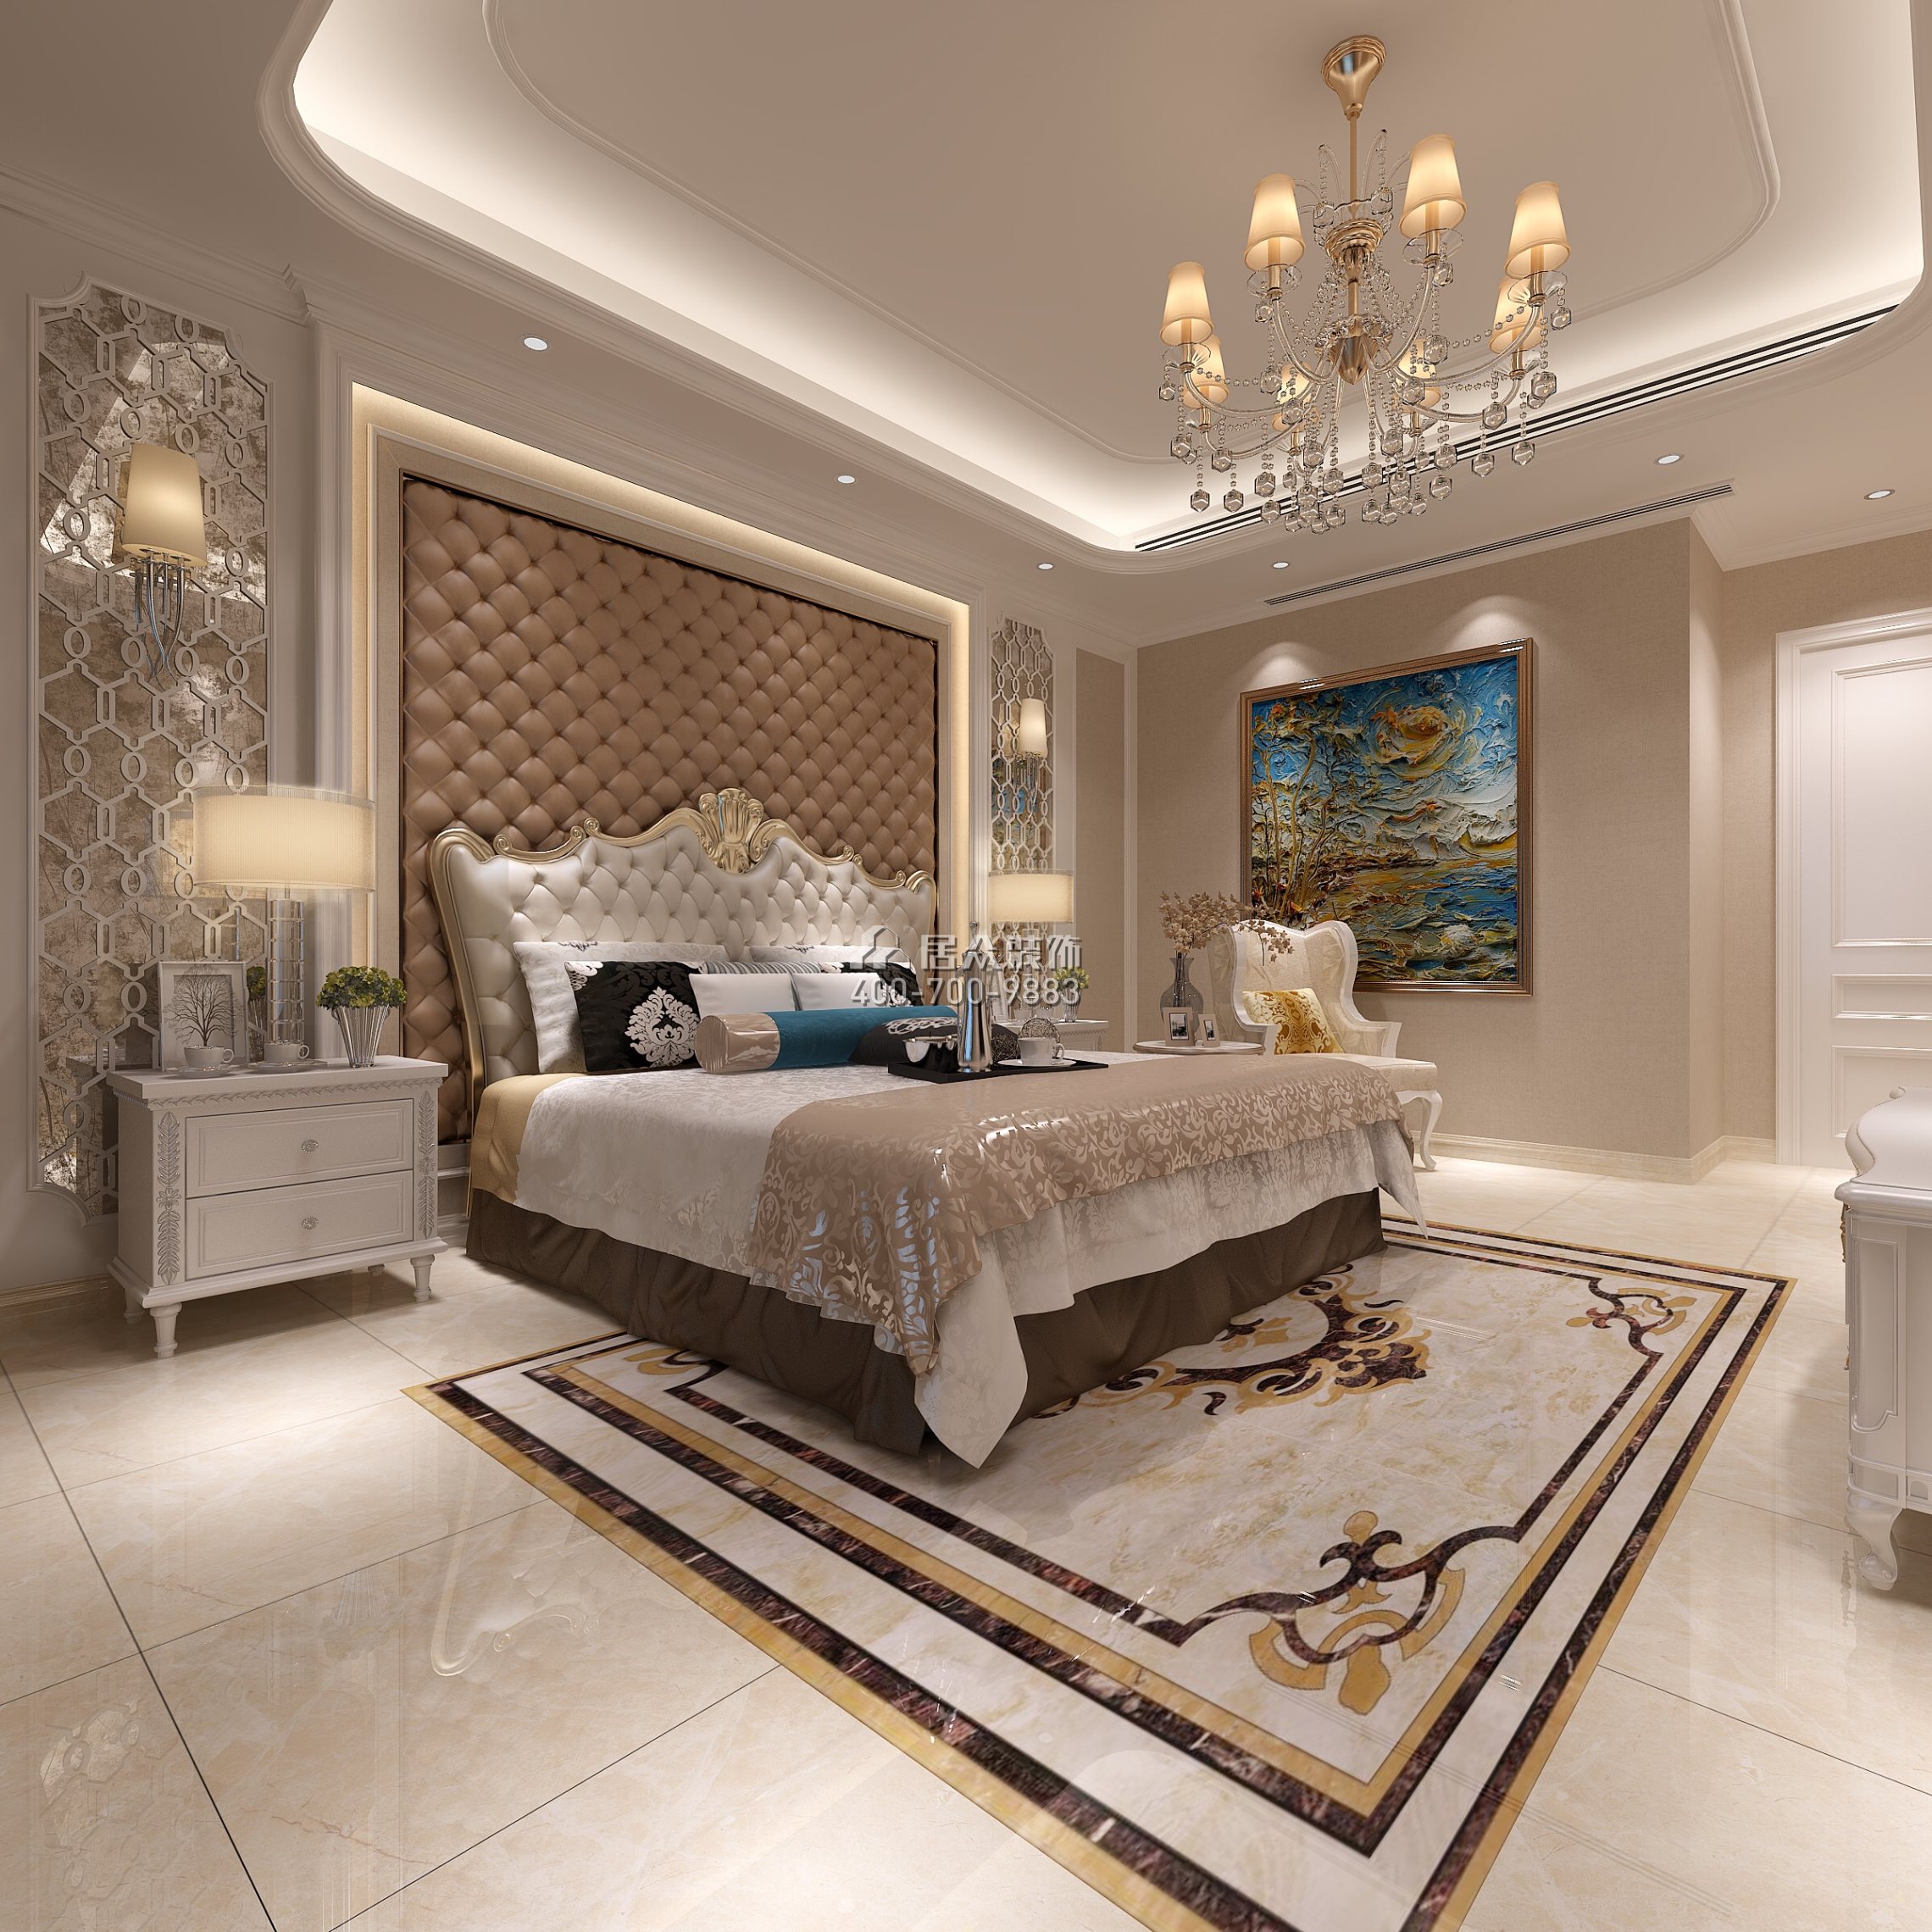 廣州華發四季186平方米歐式風格平層戶型臥室裝修效果圖